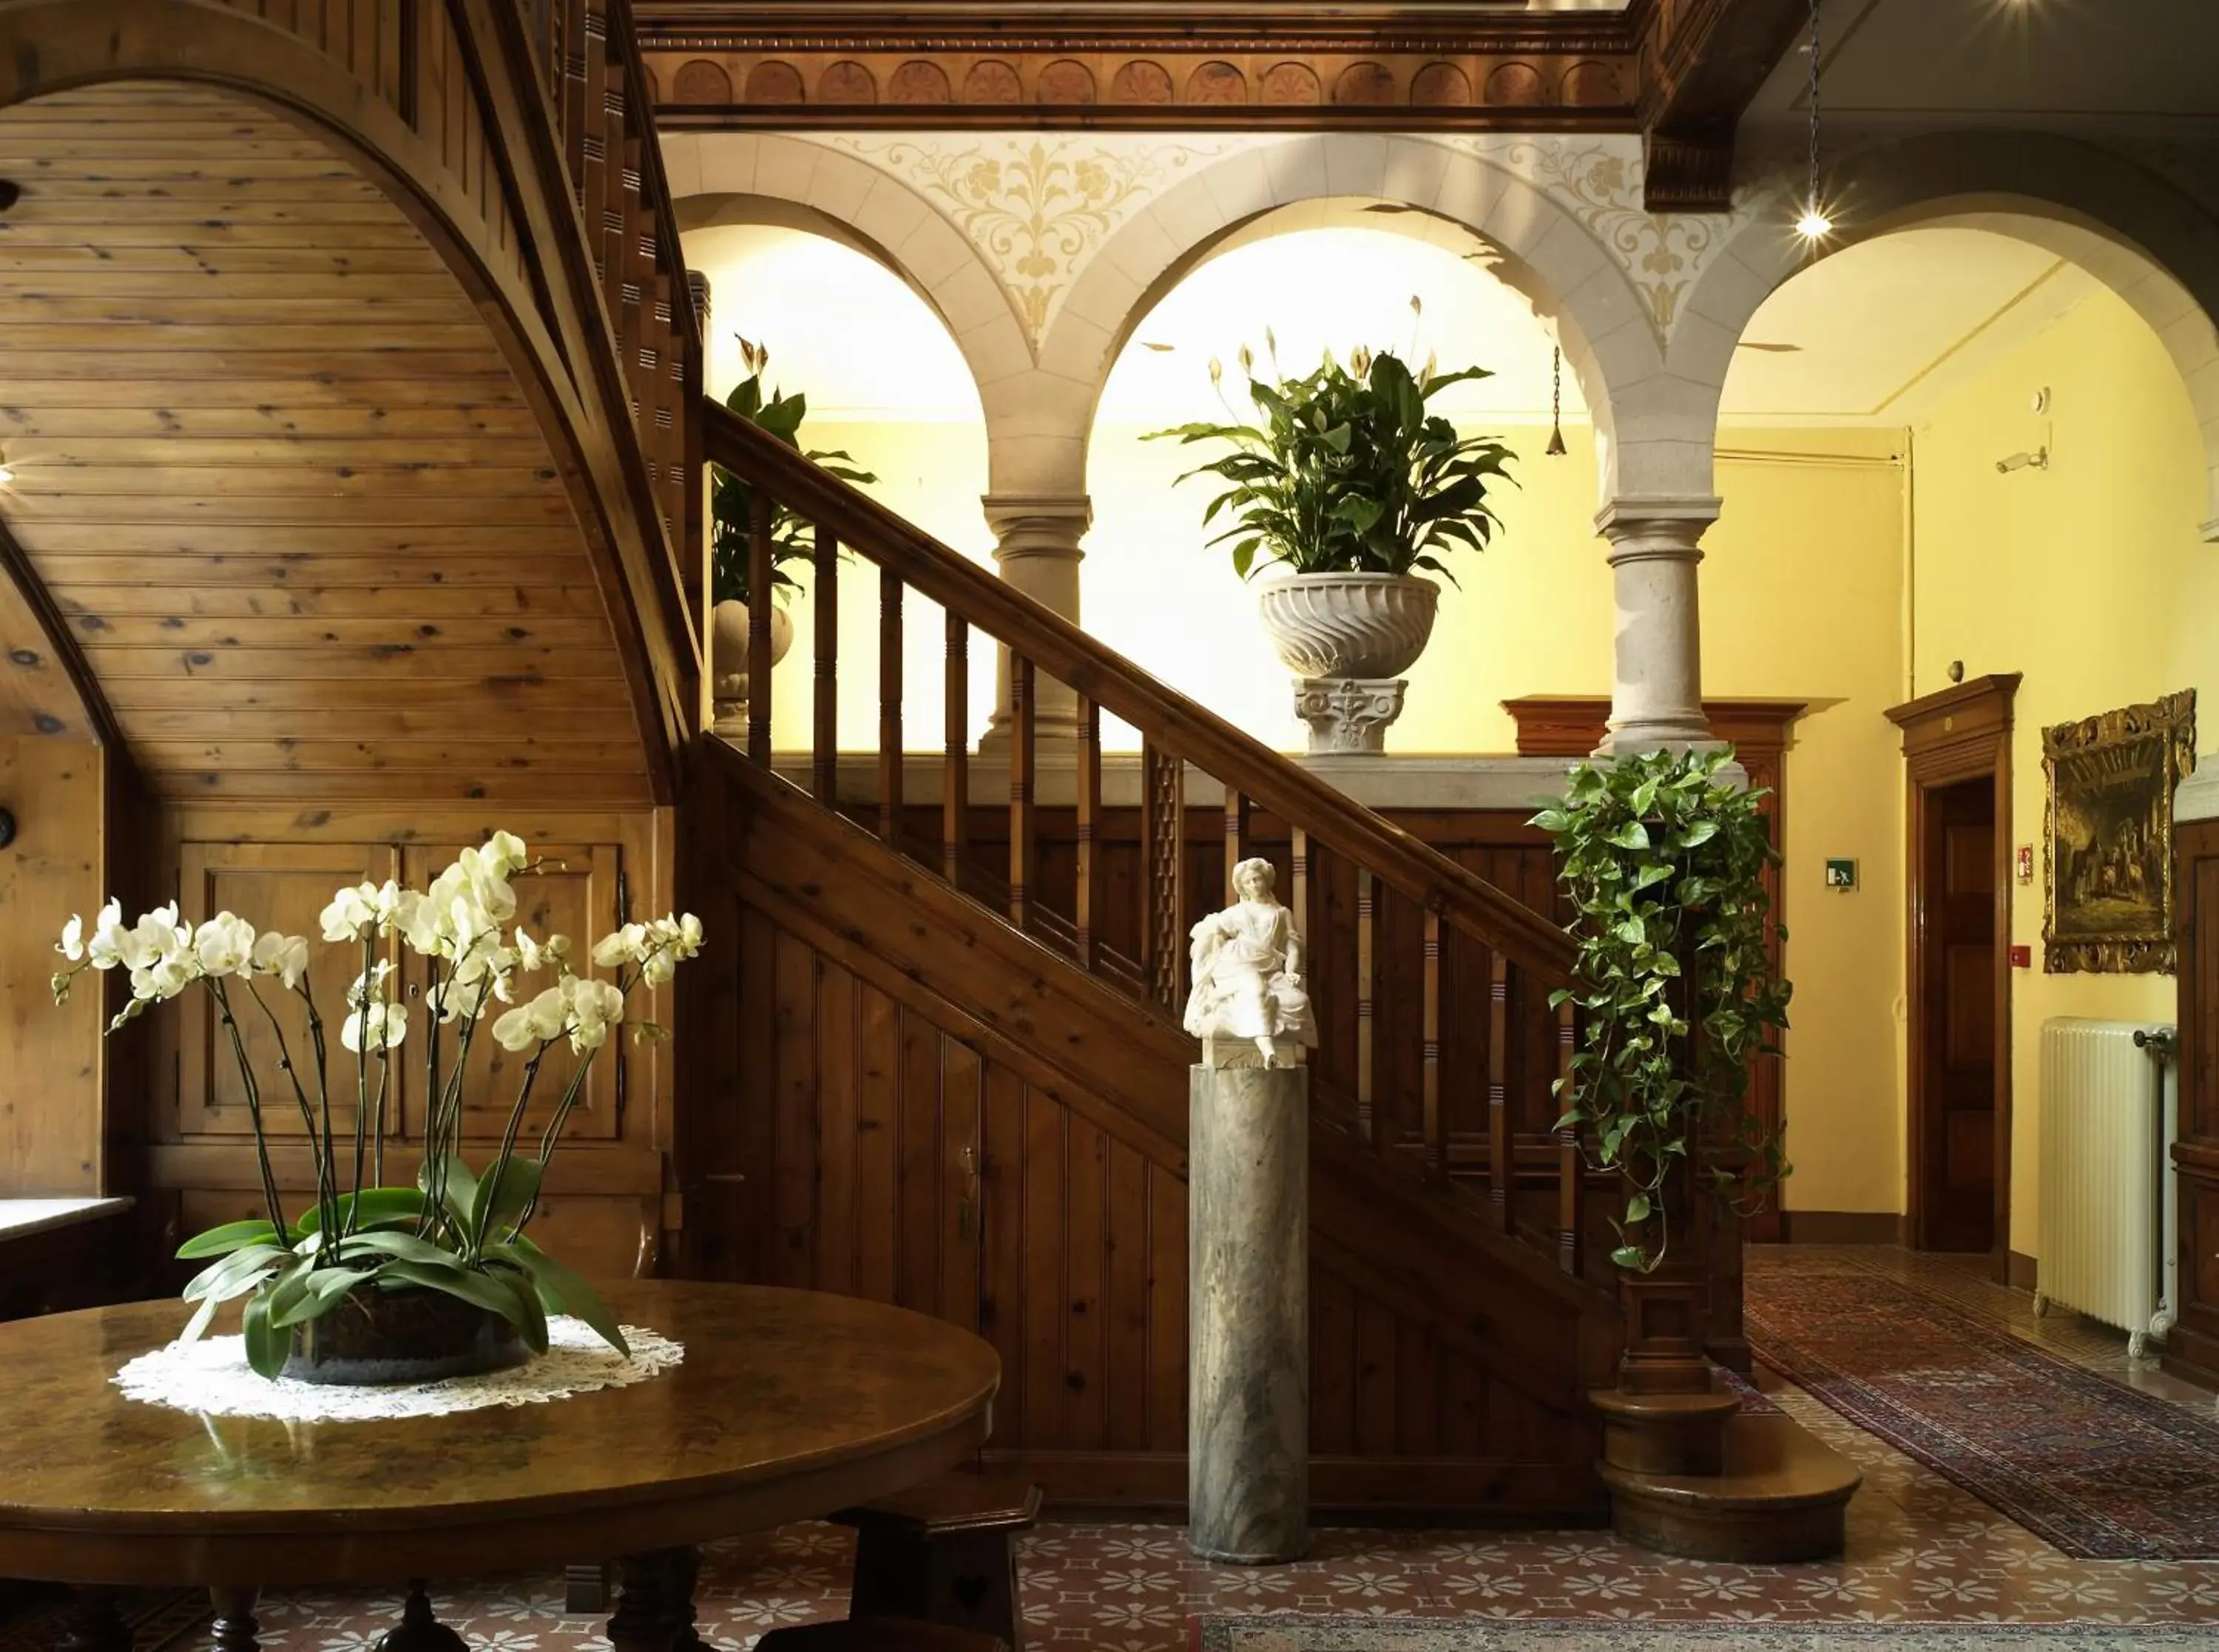 Decorative detail in Hotel Villa Del Sogno